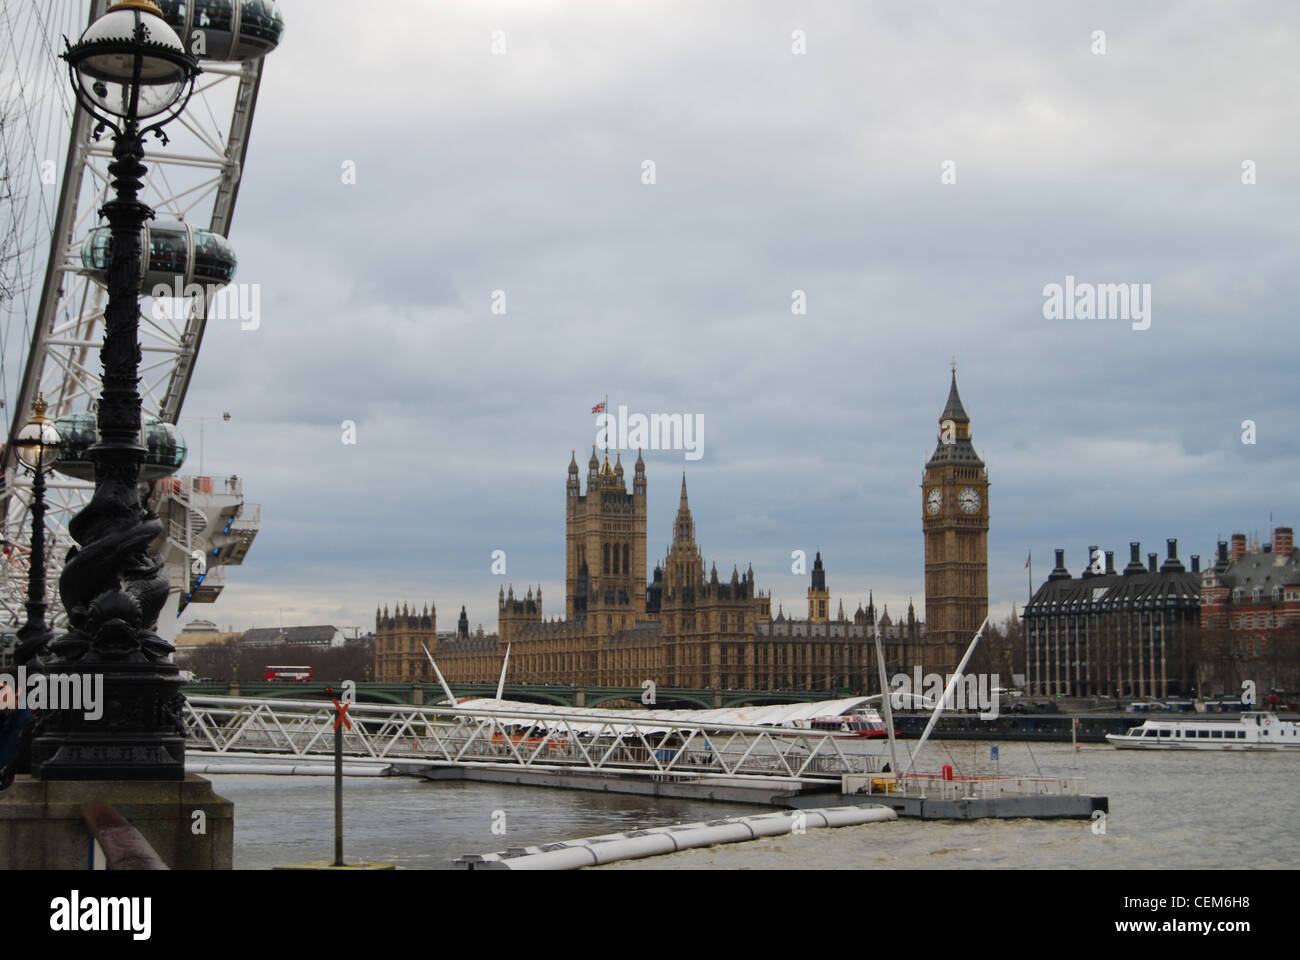 Das London Eye, das Parlament und den Big Ben - sightseeing London, Vereinigtes Königreich - Touristisches Lage - Riesenrad - an der Themse Stockfoto